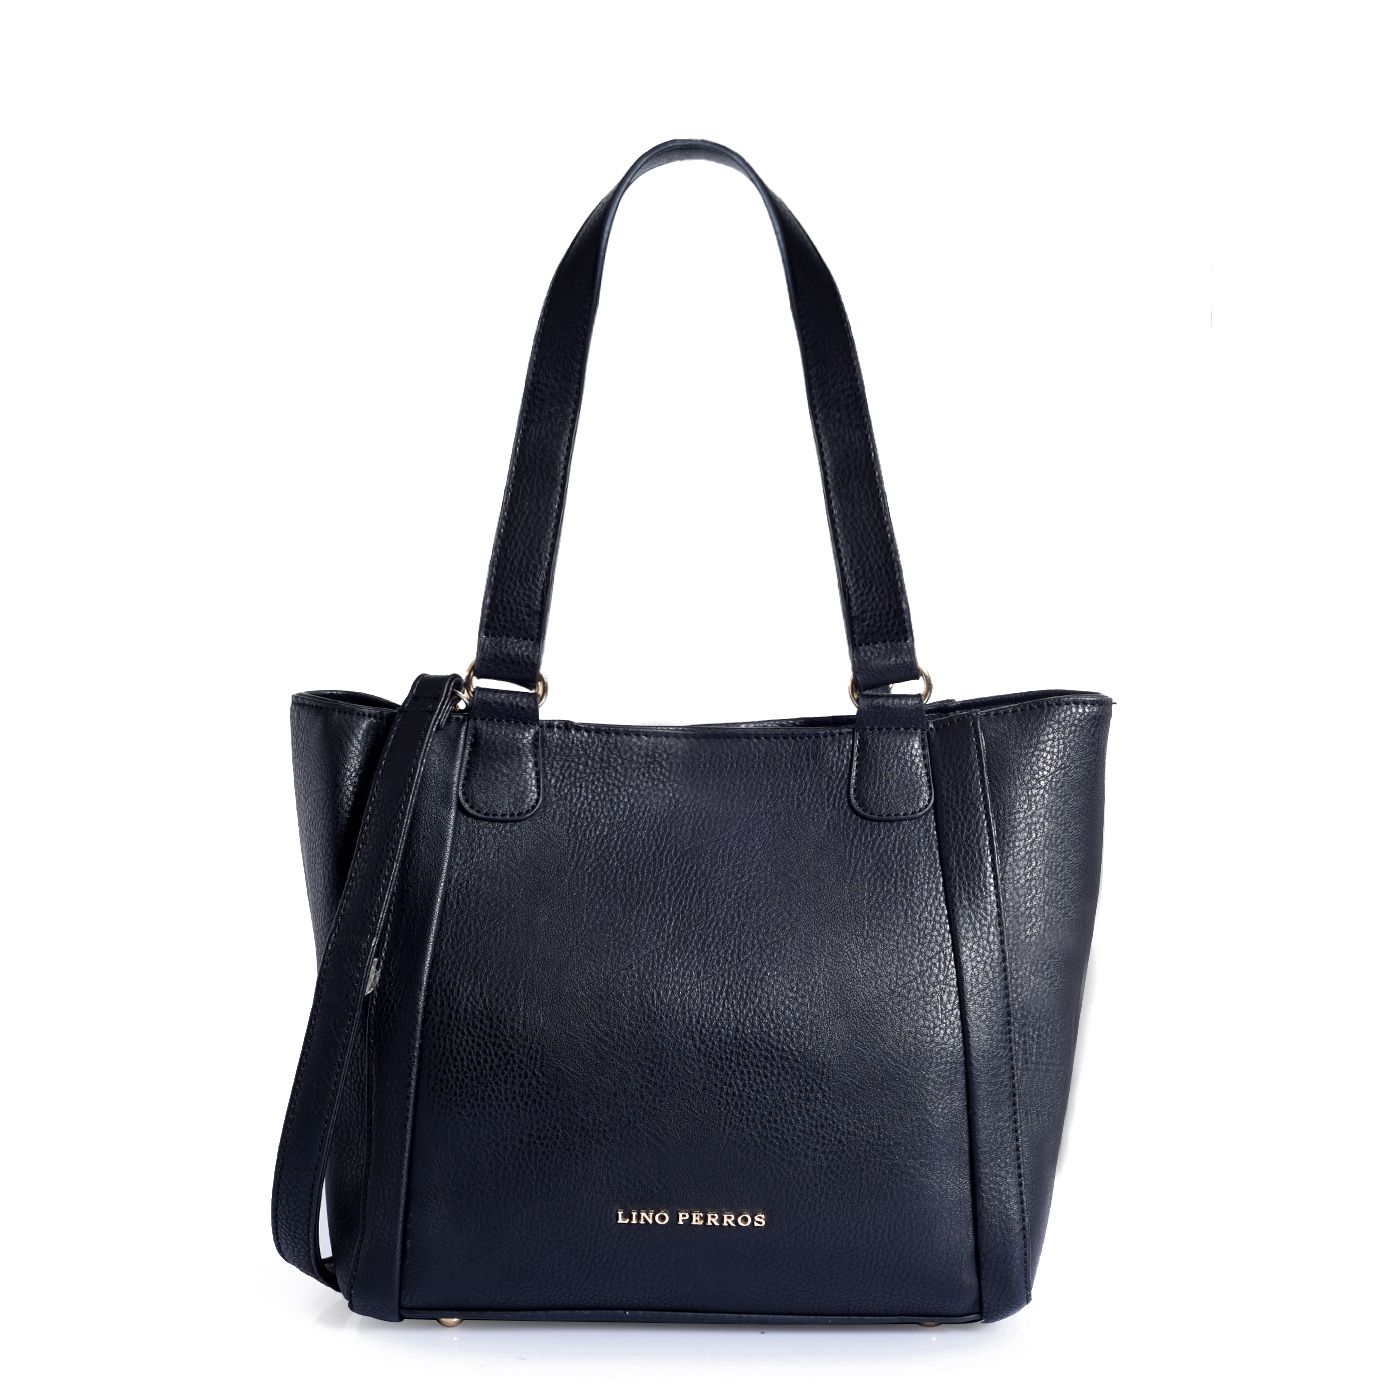 Lino Perros Black Artificial Leather Shoulder Bag - Buy Lino Perros ...